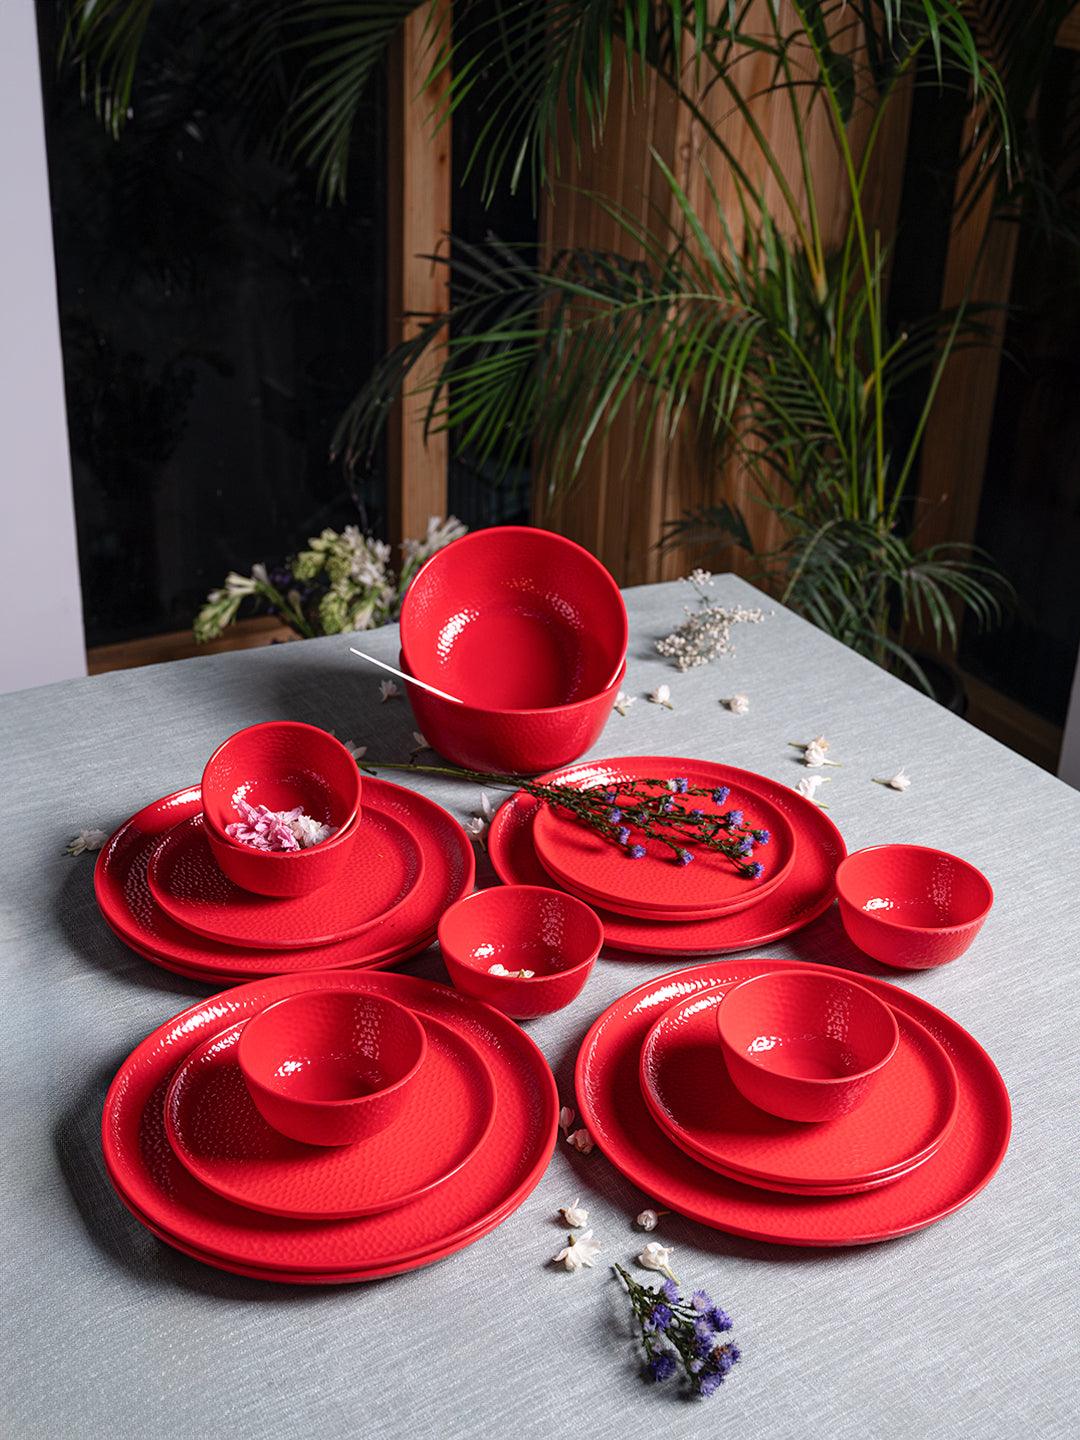 Red Dinner Sets - 20 Pcs (6 Full Plates + 6 Quarter Plates + 2 Big Bowls + 6 Soup Bowls) at Market Best Price  - MARKET 99